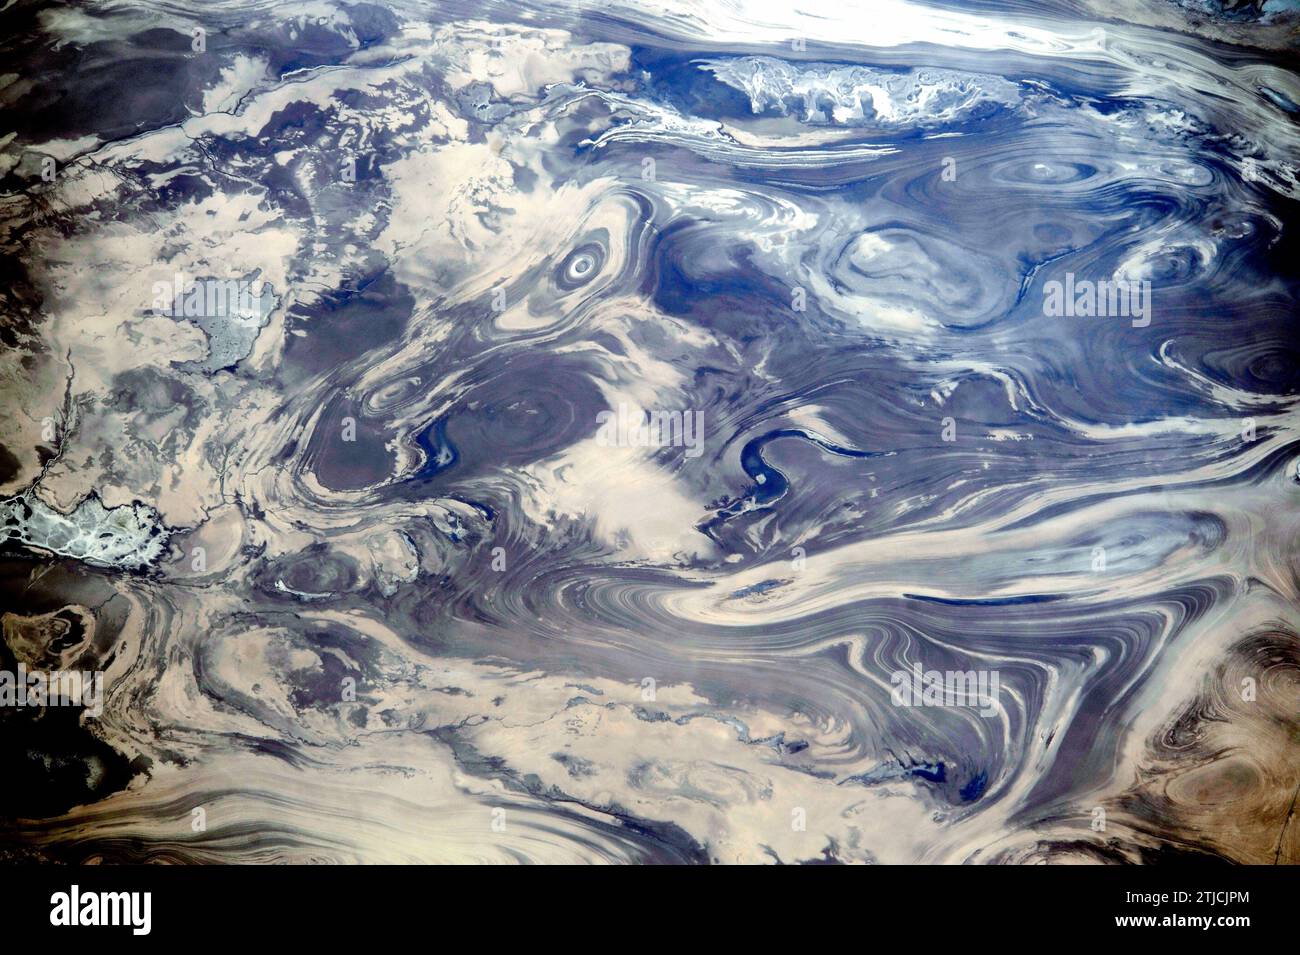 Iran. Cette image a été prise alors que la Station spatiale internationale passait au-dessus des déserts du centre de l'Iran, y compris Kavir. Le manque de sol et de végétation permet de voir la structure géologique des roches. Les motifs résultent du pliage doux de nombreuses couches minces, claires et sombres de roche. L'eau sombre d'un lac (centre) occupe une dépression dans une couche en forme de S plus facilement érodée. Une petite rivière serpente en bas de l'image. Il n'y a rien pour donner un sens de l'échelle ; la largeur de l'image représente une distance de 65km une version optimisée d'une image originale de la NASA / crédit : NASA Banque D'Images